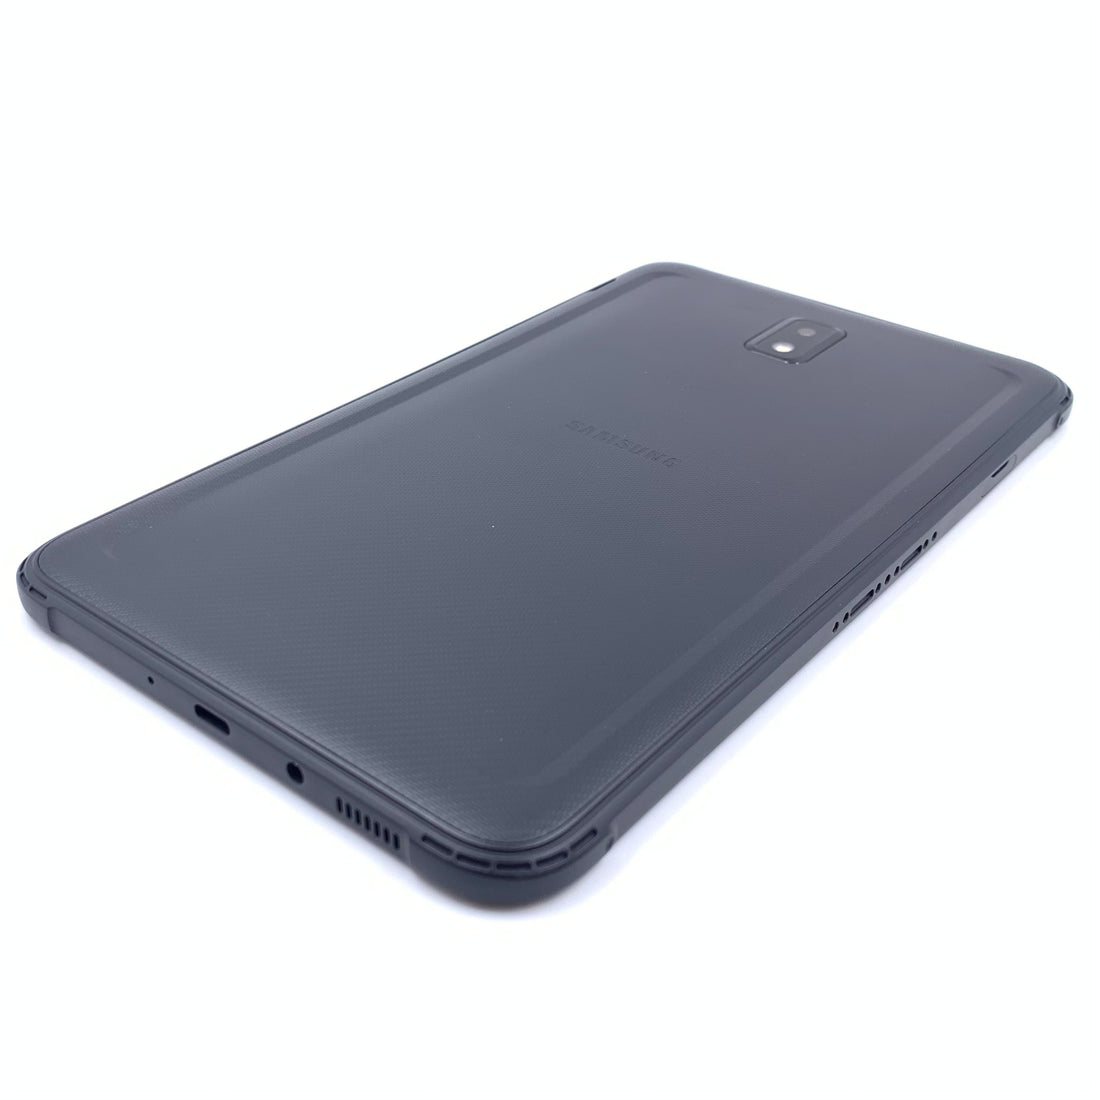 Samsung Galaxy Tab Active 3 SM-T575 64GB (Reacondicionado)